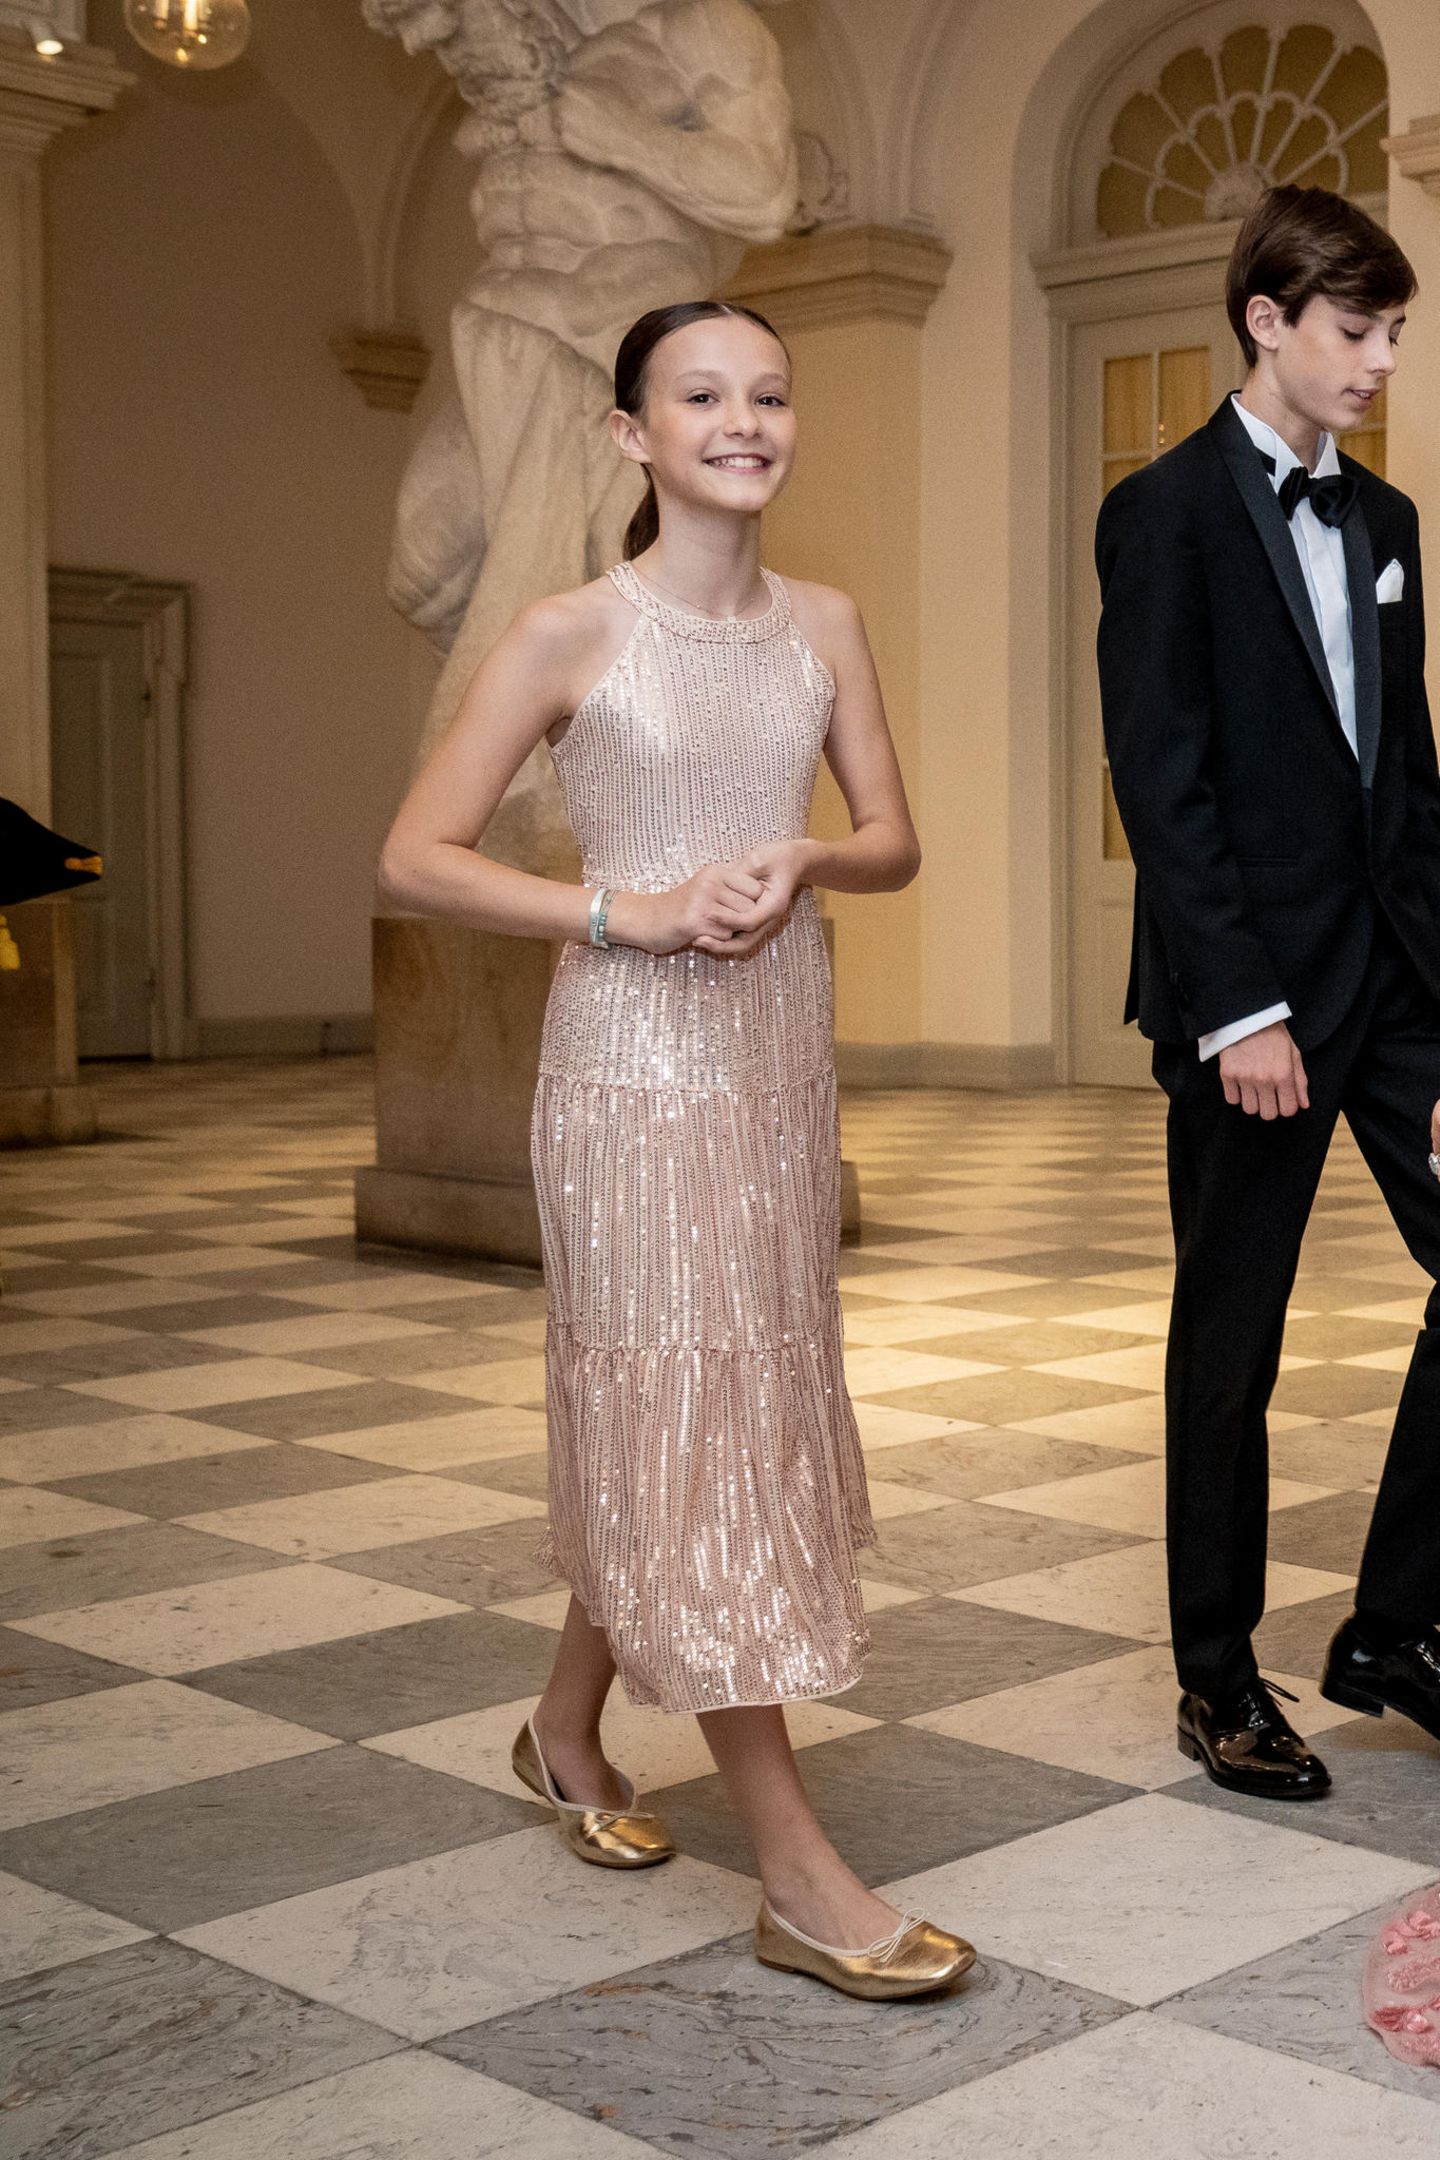 Es ist ihr erster Auftritt im Abendkleid: Athena zu Dänemark, die Tochter von Prinz Joachim bezaubert zum Geburtstagsbankett ihres Cousins in einem cremefarbenen Paillettenkleid und goldenen Ballerinas. Die Haare hat sich die junge Dänin zu einem süßen Pferdeschwanz frisieren lassen.